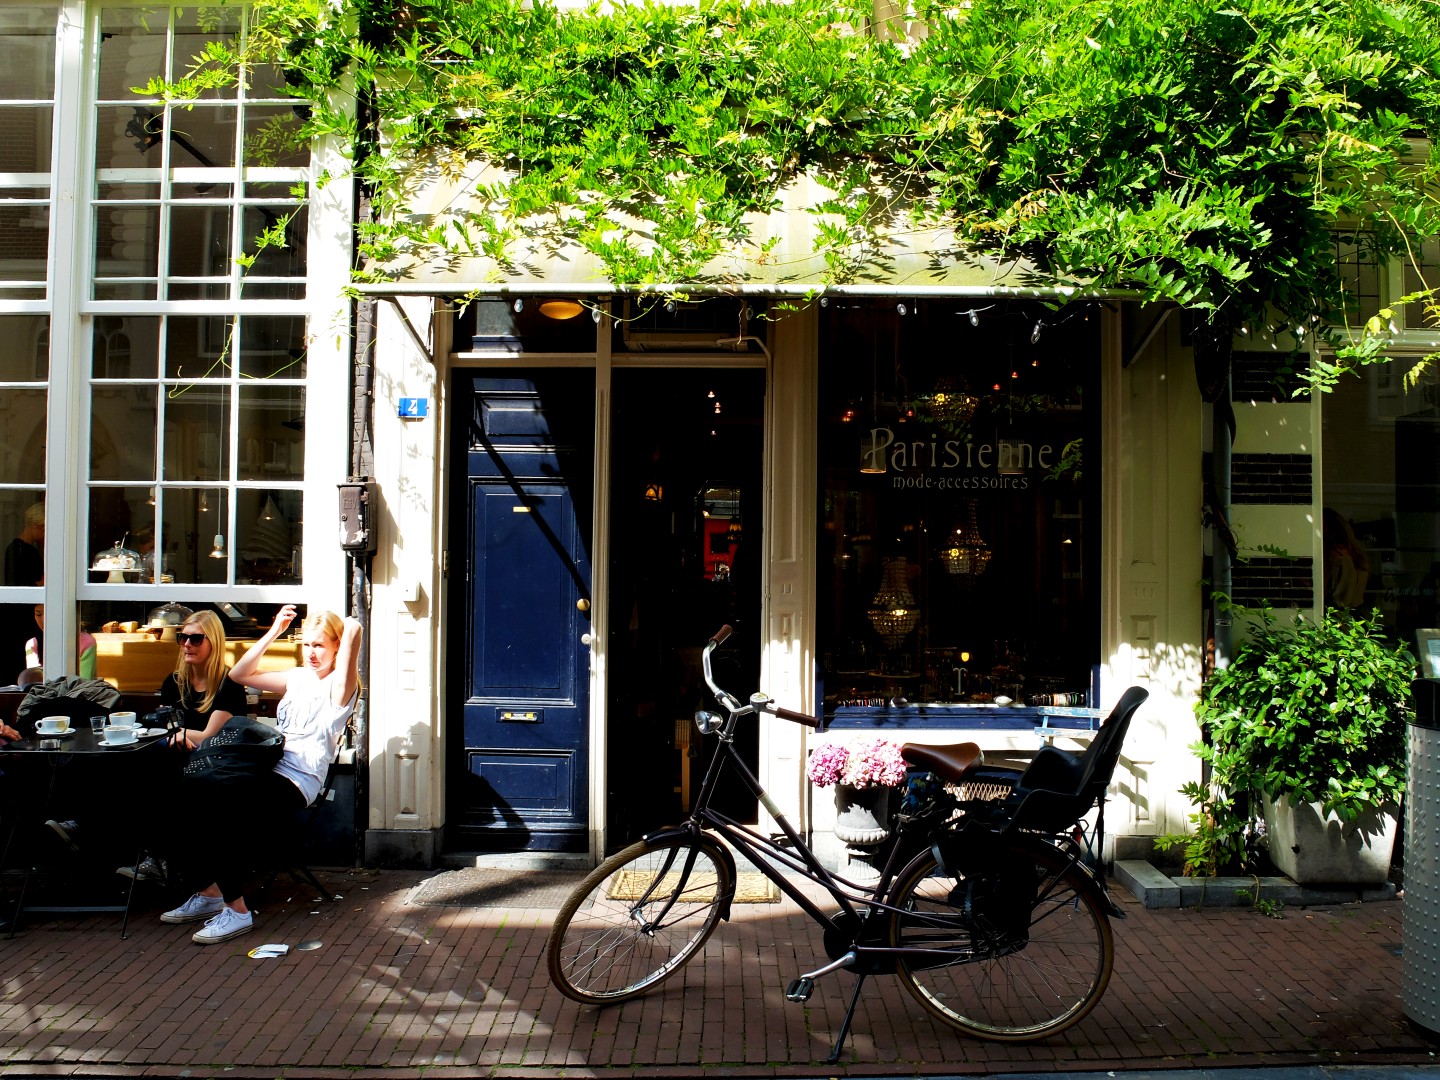 Amsterdam - Parisienne